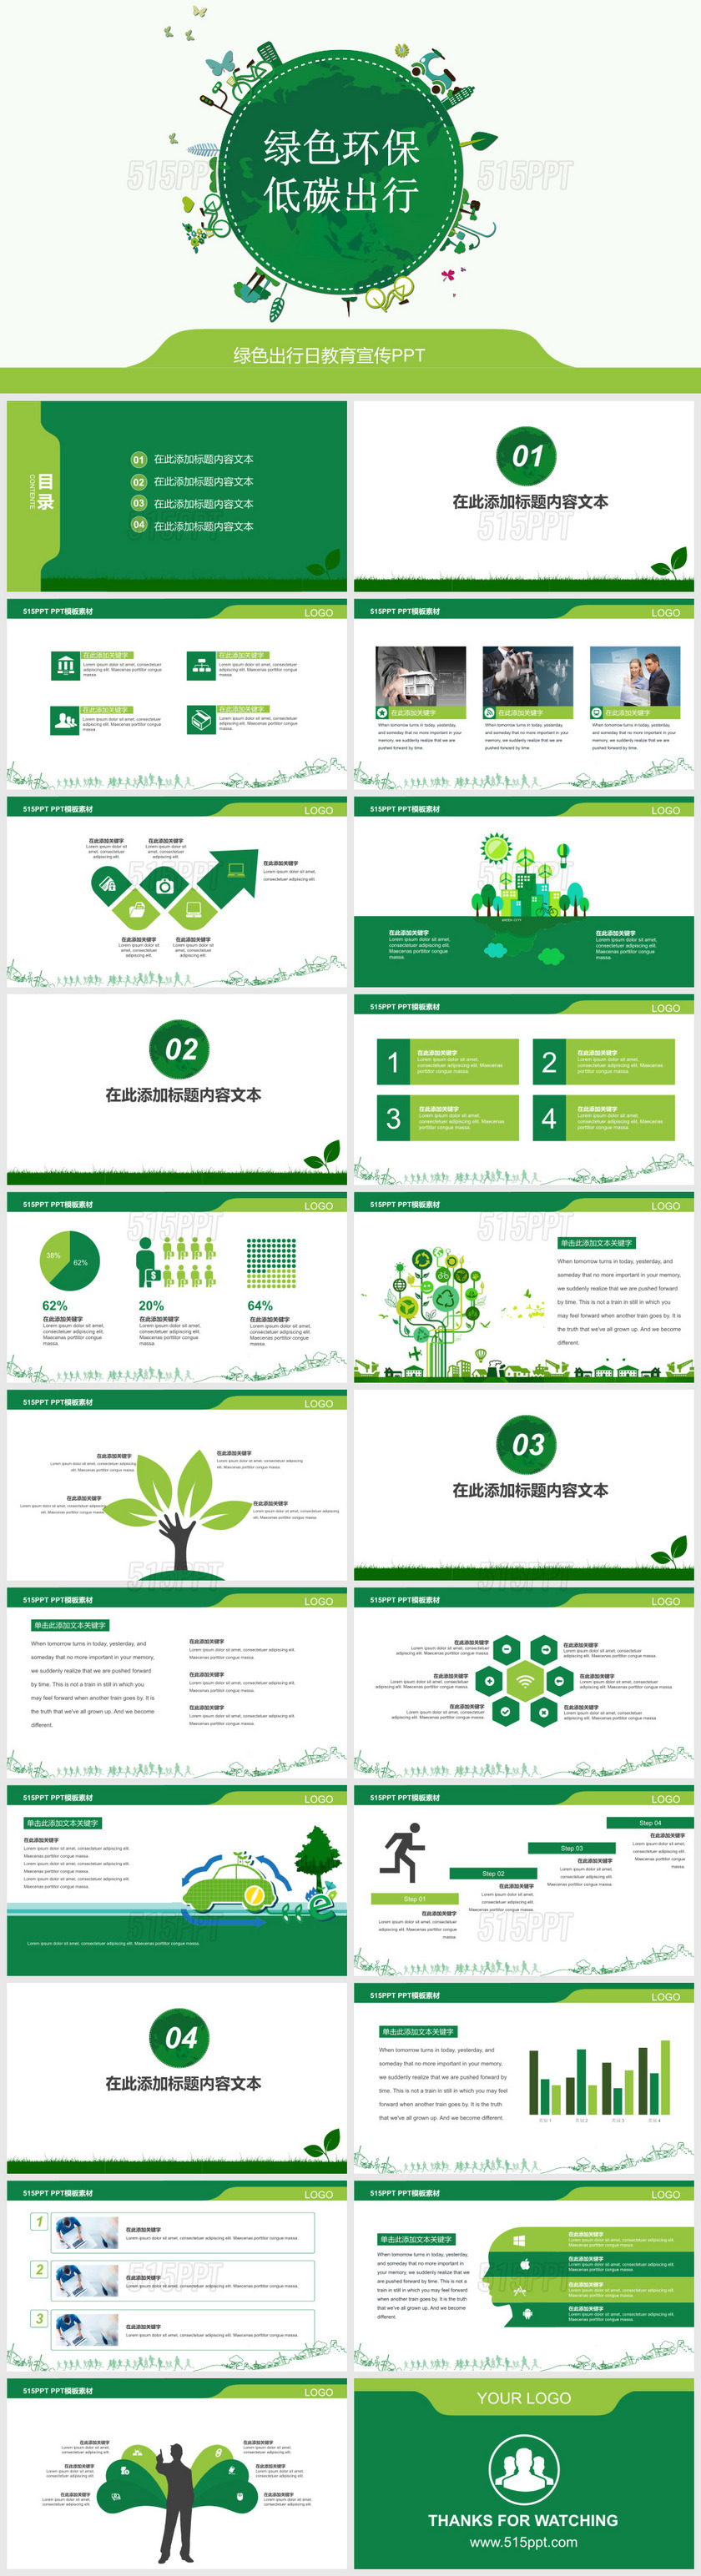 绿色环保低碳出行绿色出行日教育宣传PPT模板